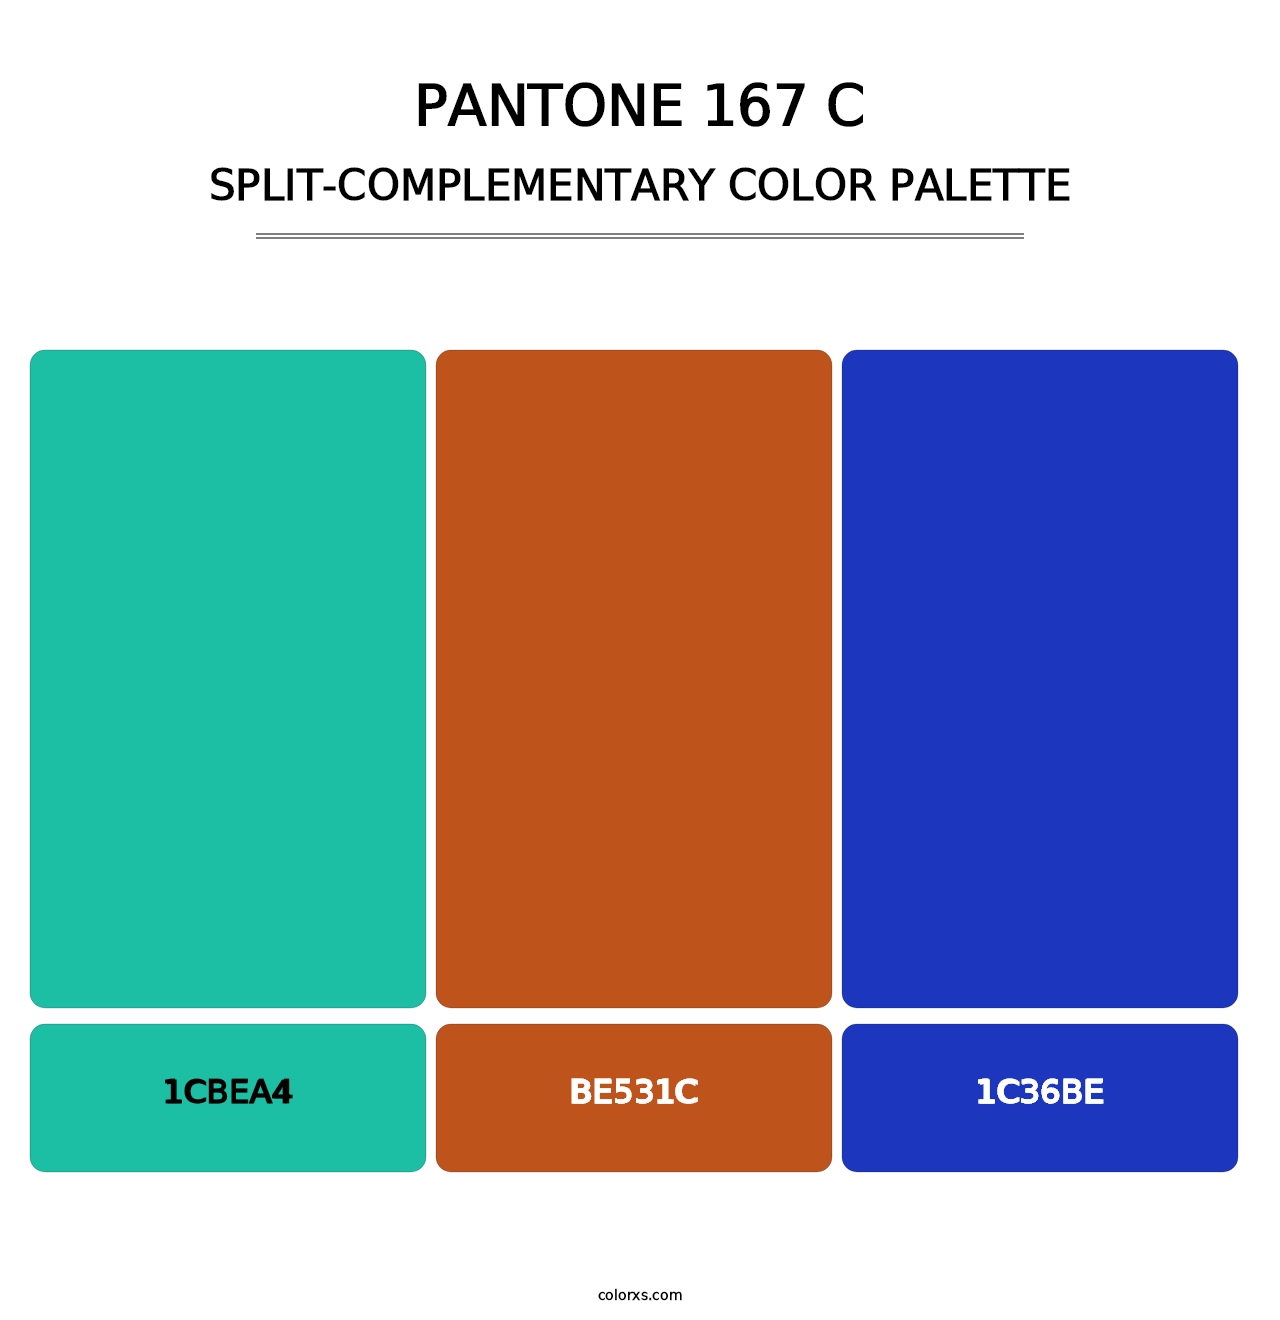 PANTONE 167 C - Split-Complementary Color Palette